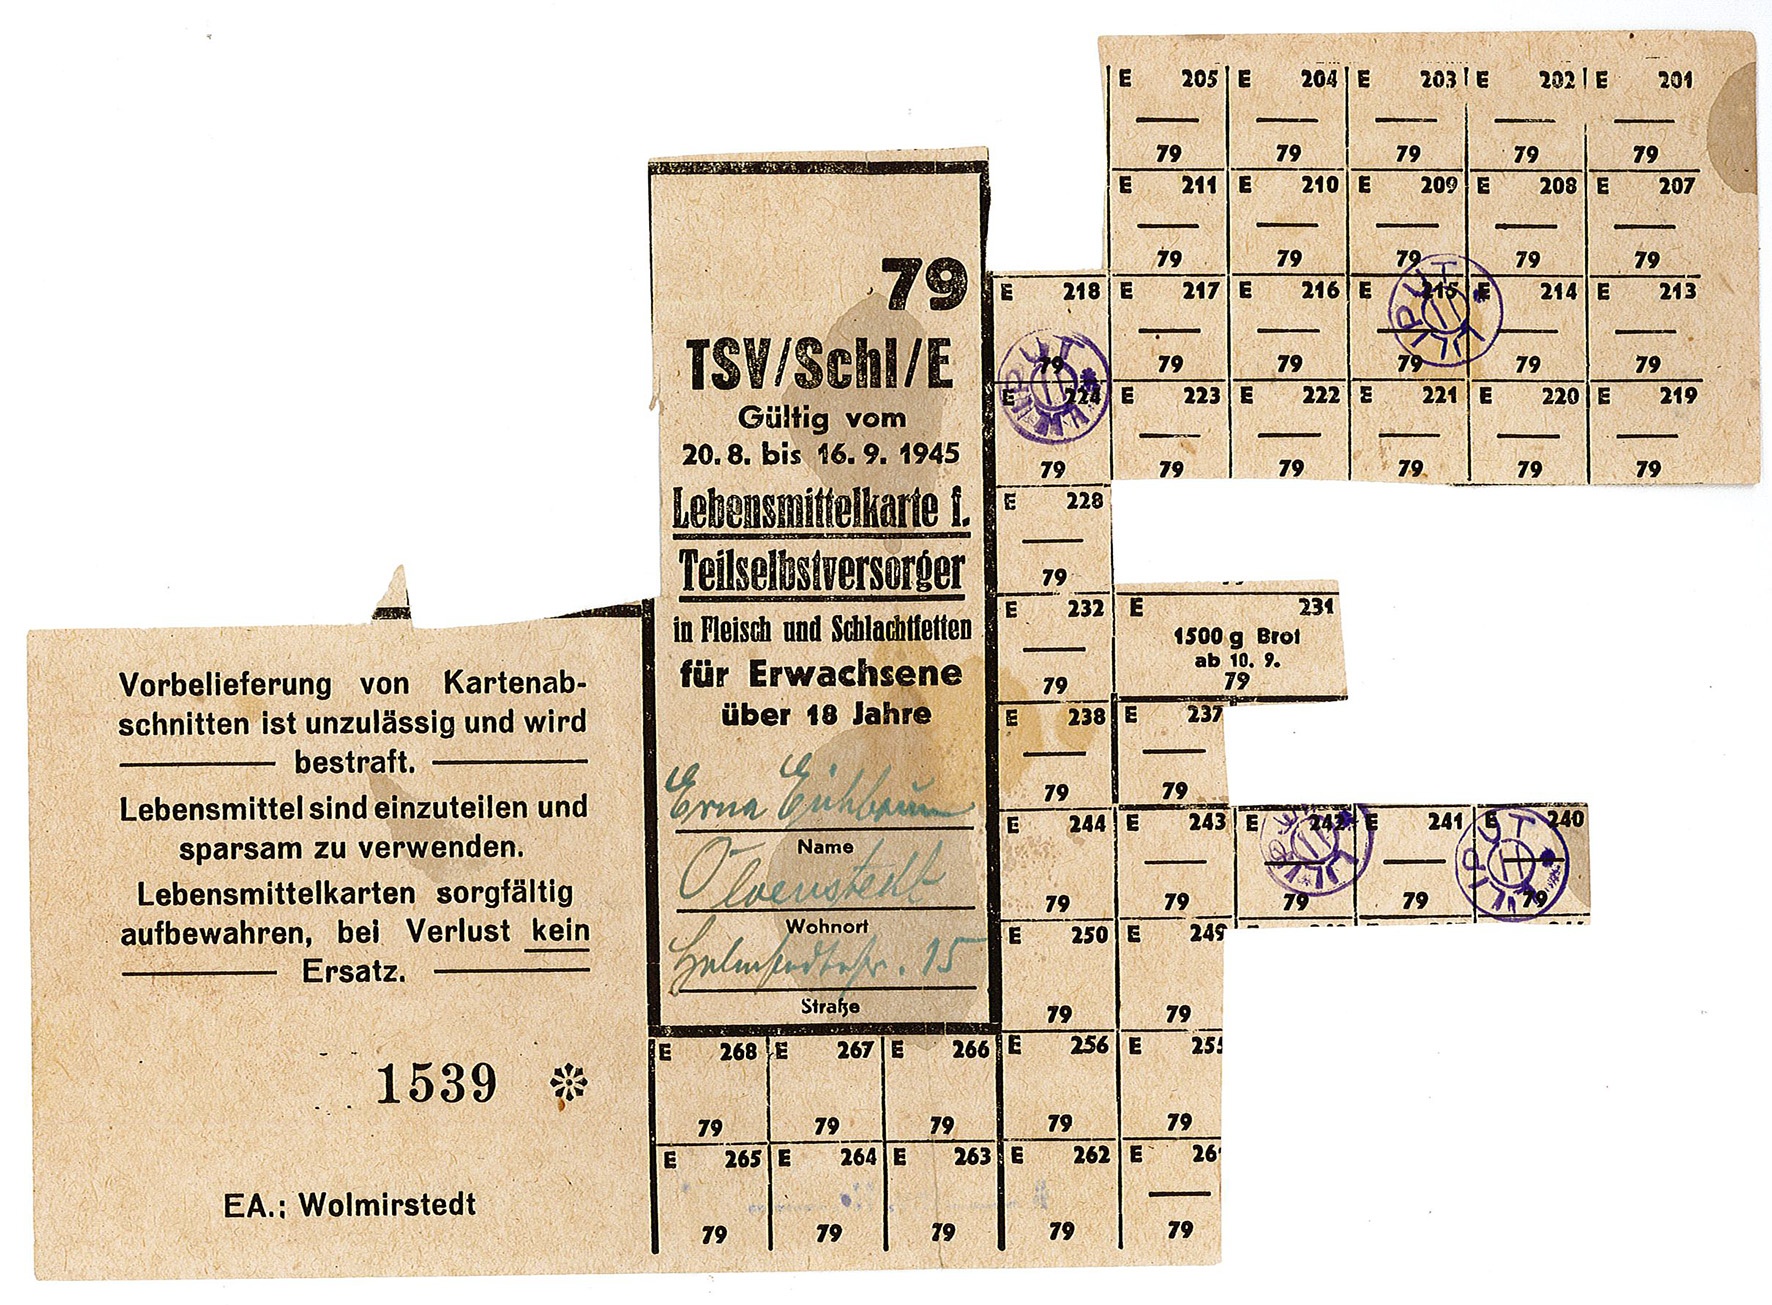 Lebensmittelkarte: Teilselbstversorger in Fleisch und Schlachtfetten für Erwachsene über 18 Jahren, August/September 1945 (Museum Wolmirstedt RR-F)